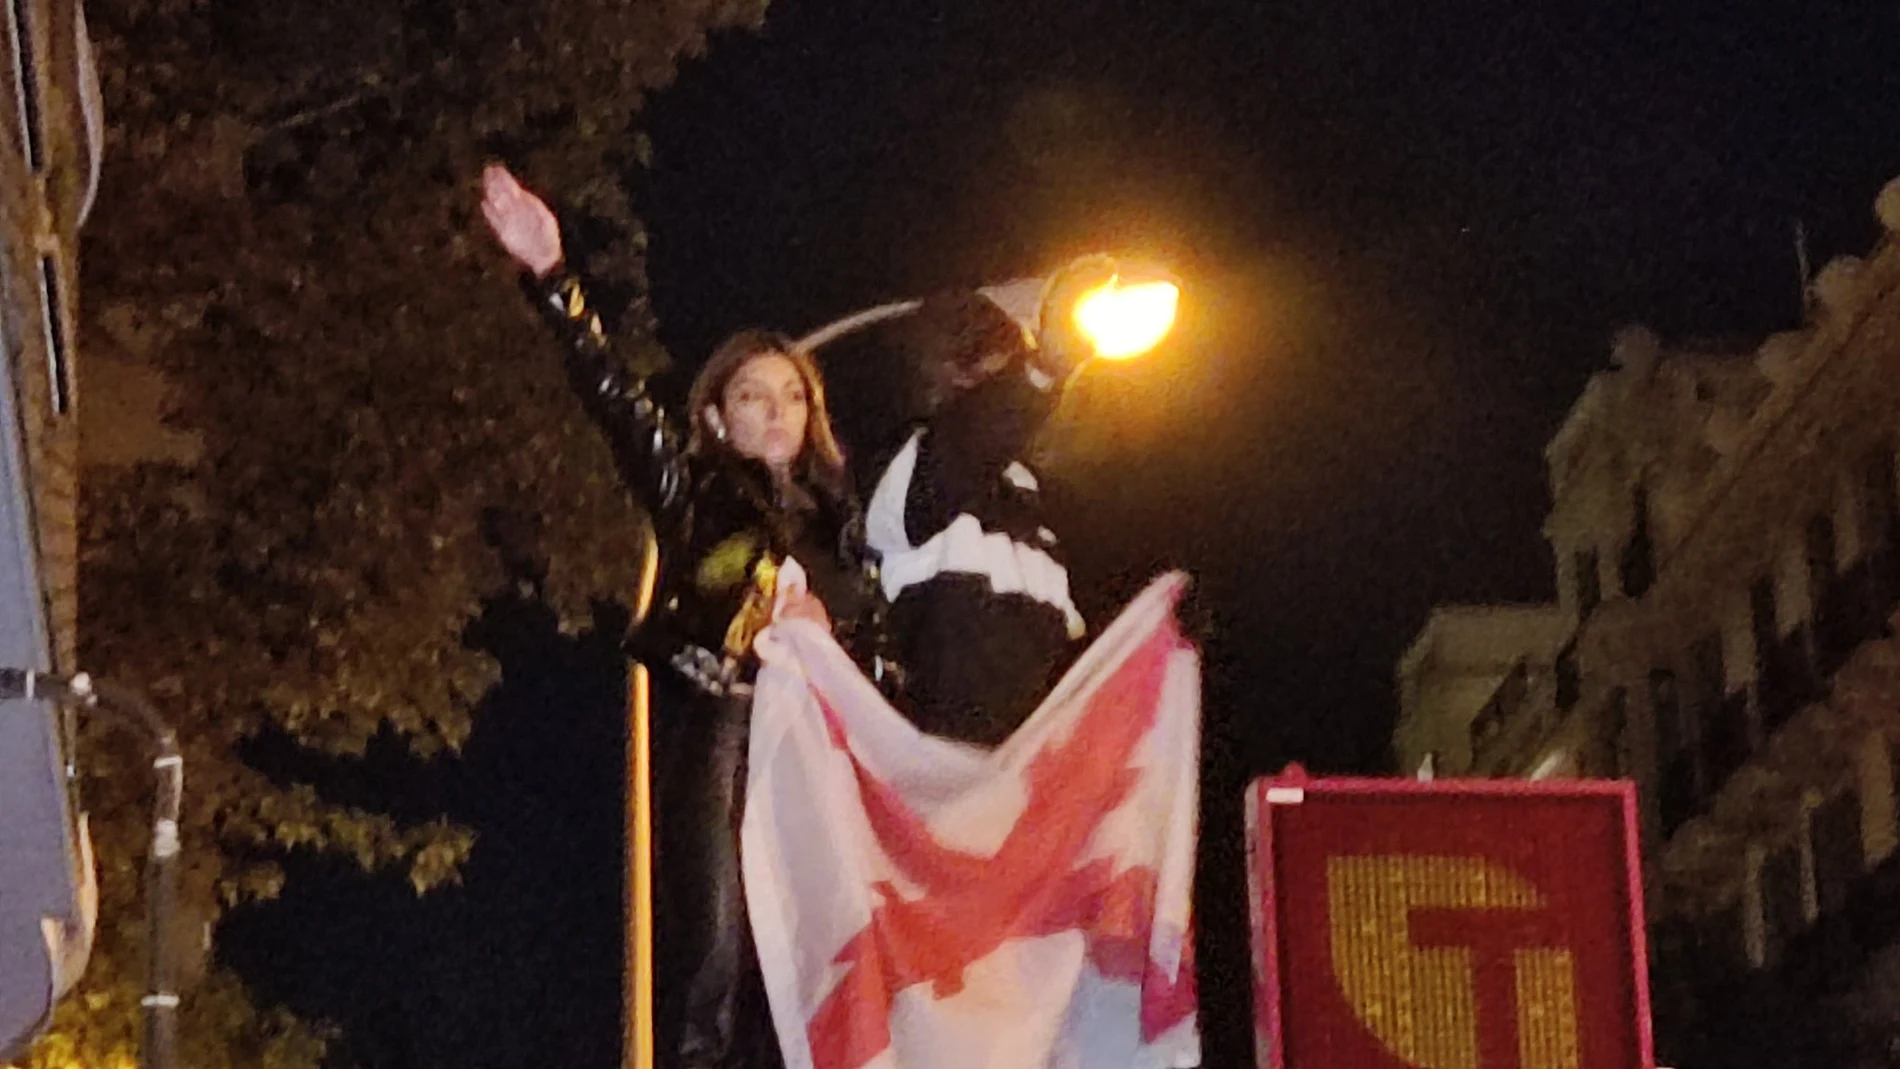 La neonazi Isabel Peralta se sube a un kiosko, hace saludos fascistas y es abucheada por los manifestantes: